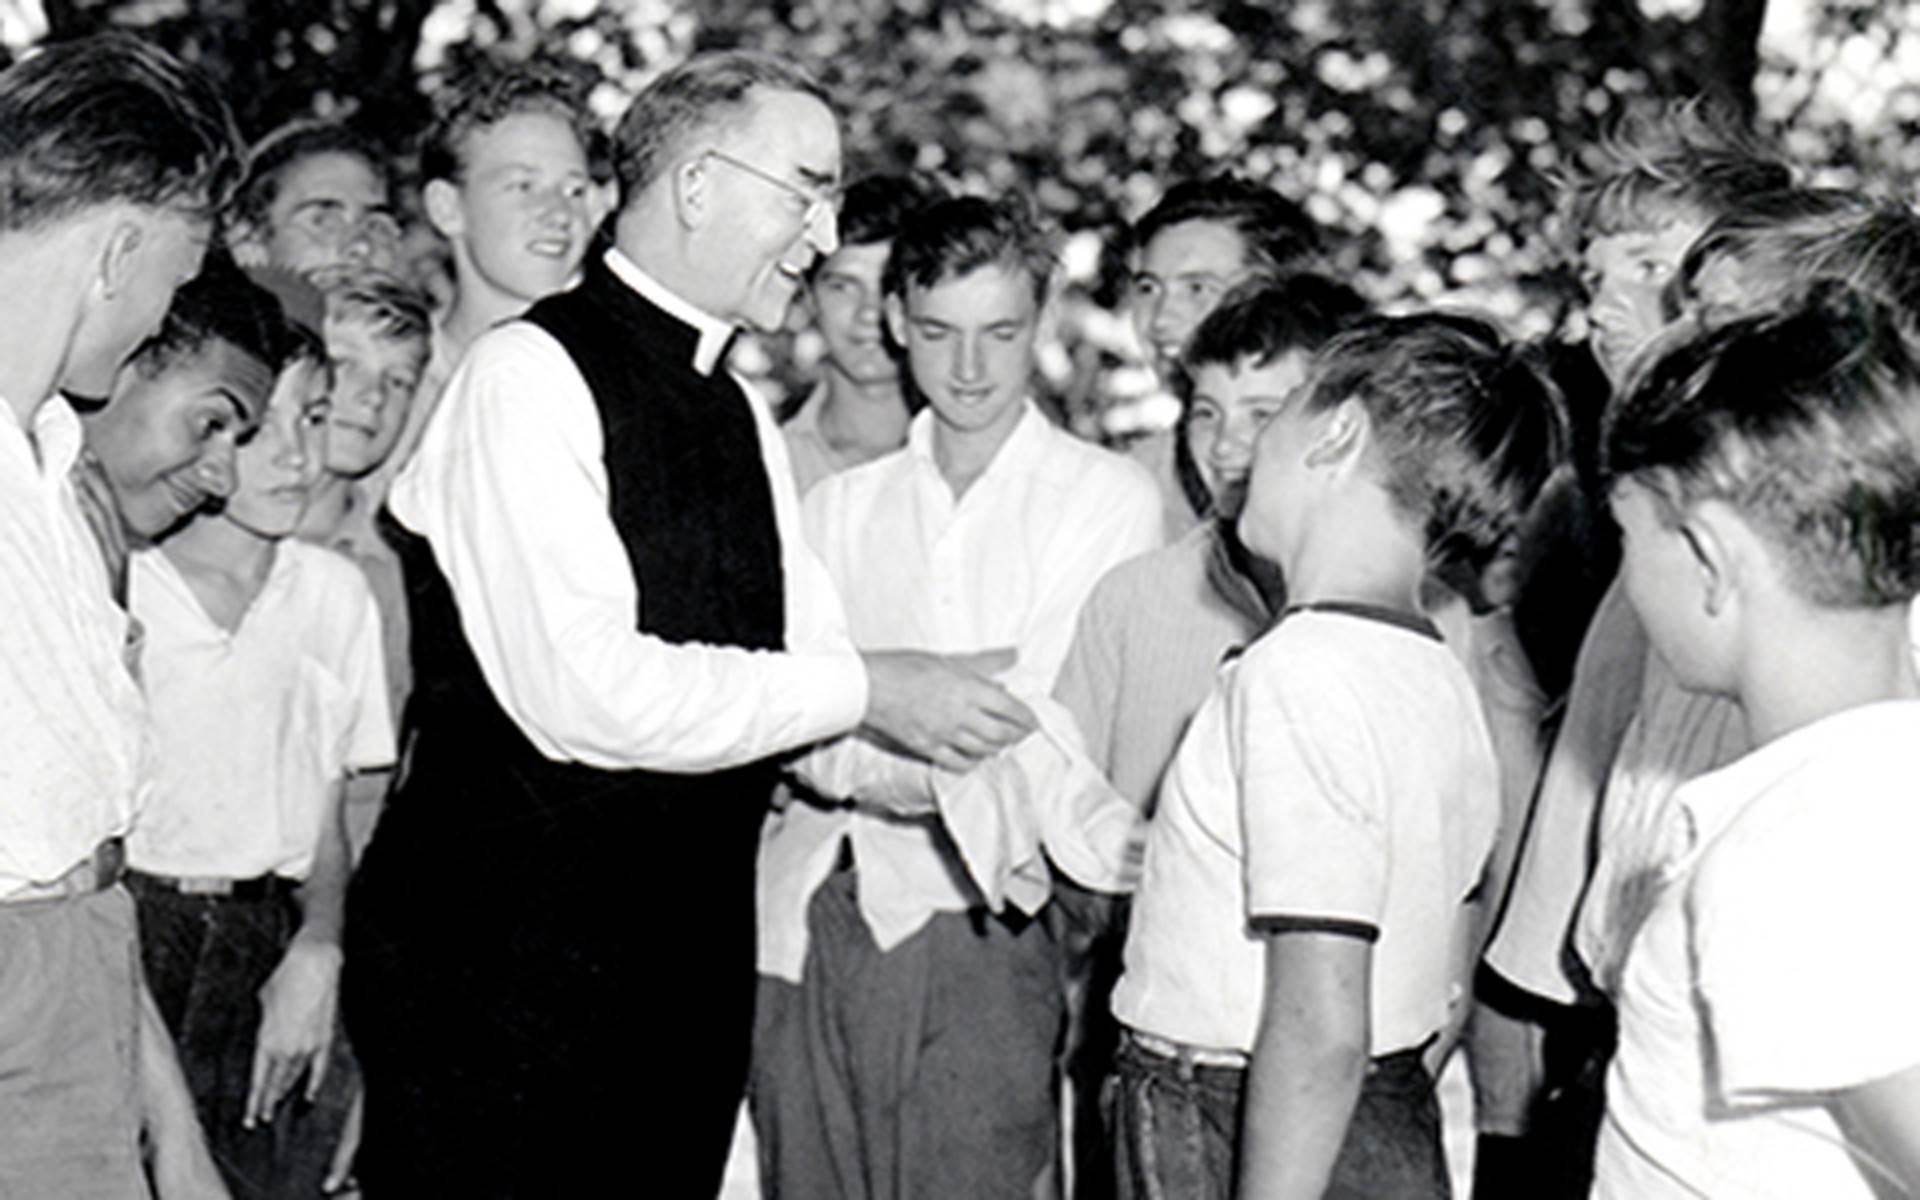 Father Flanagan teaching kids